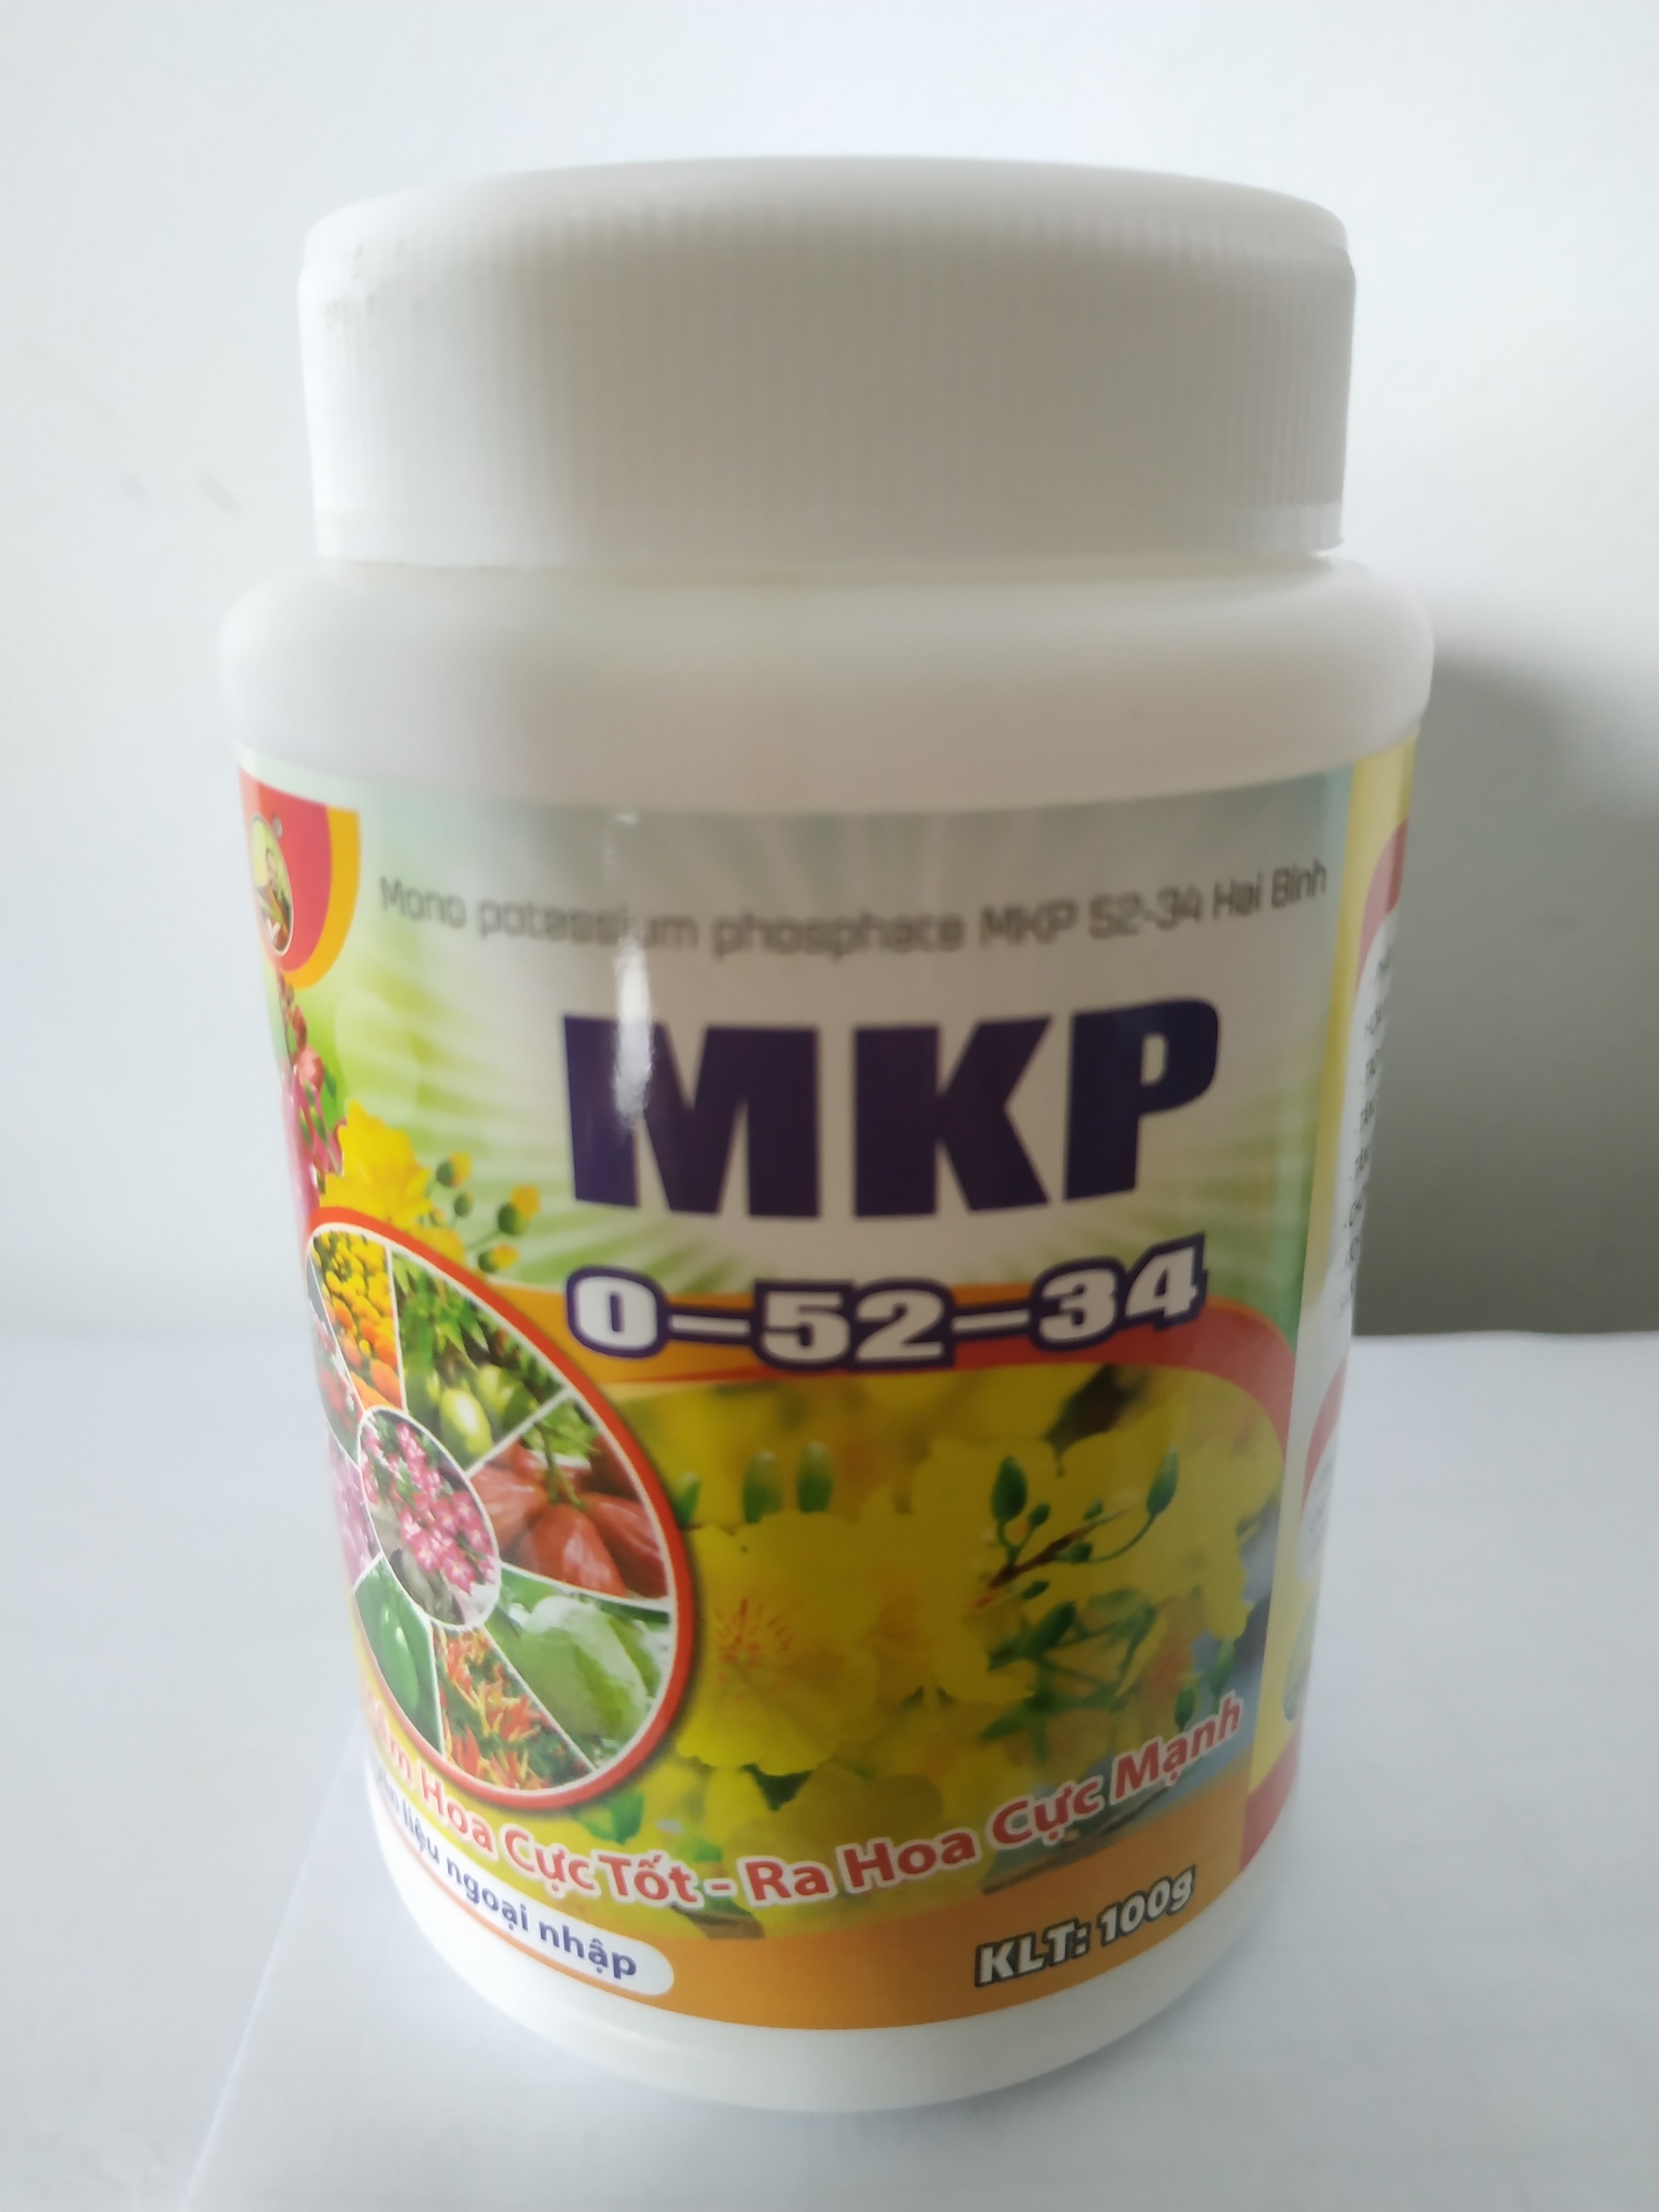 Phân bón MKP 0-52-34 kích tạo mầm hoa, ra hoa cực mạnh bomax - chai 100g